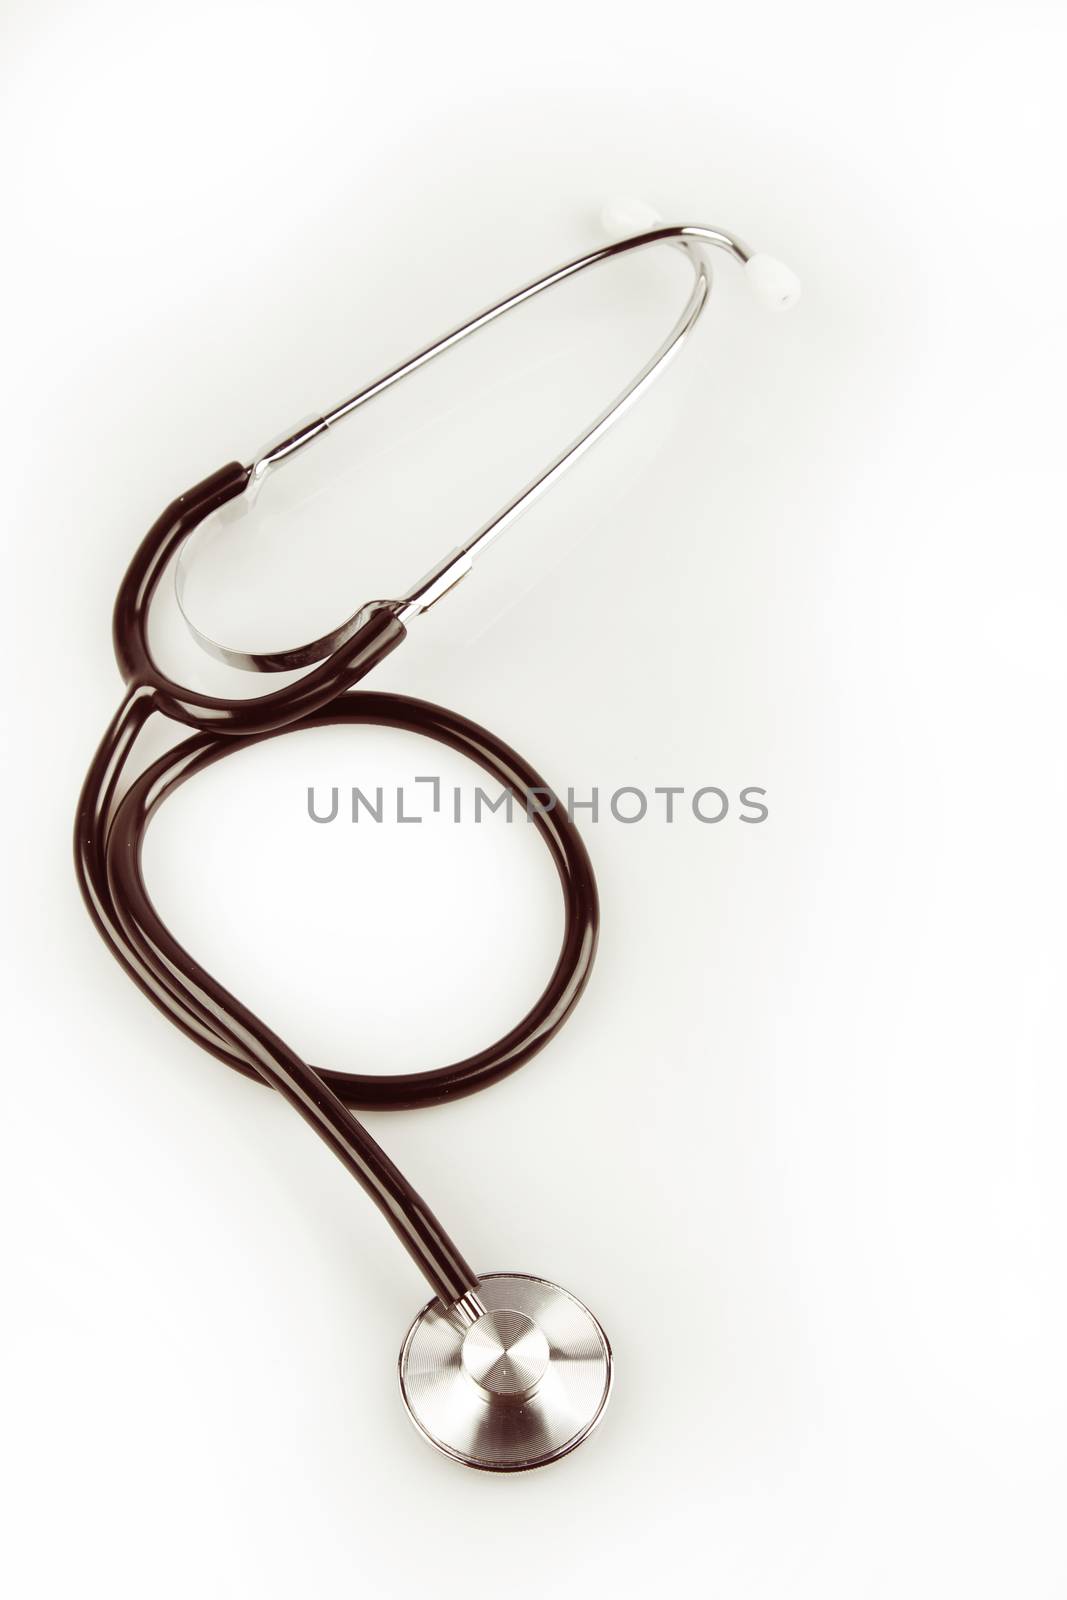 Stethoscope on plain background